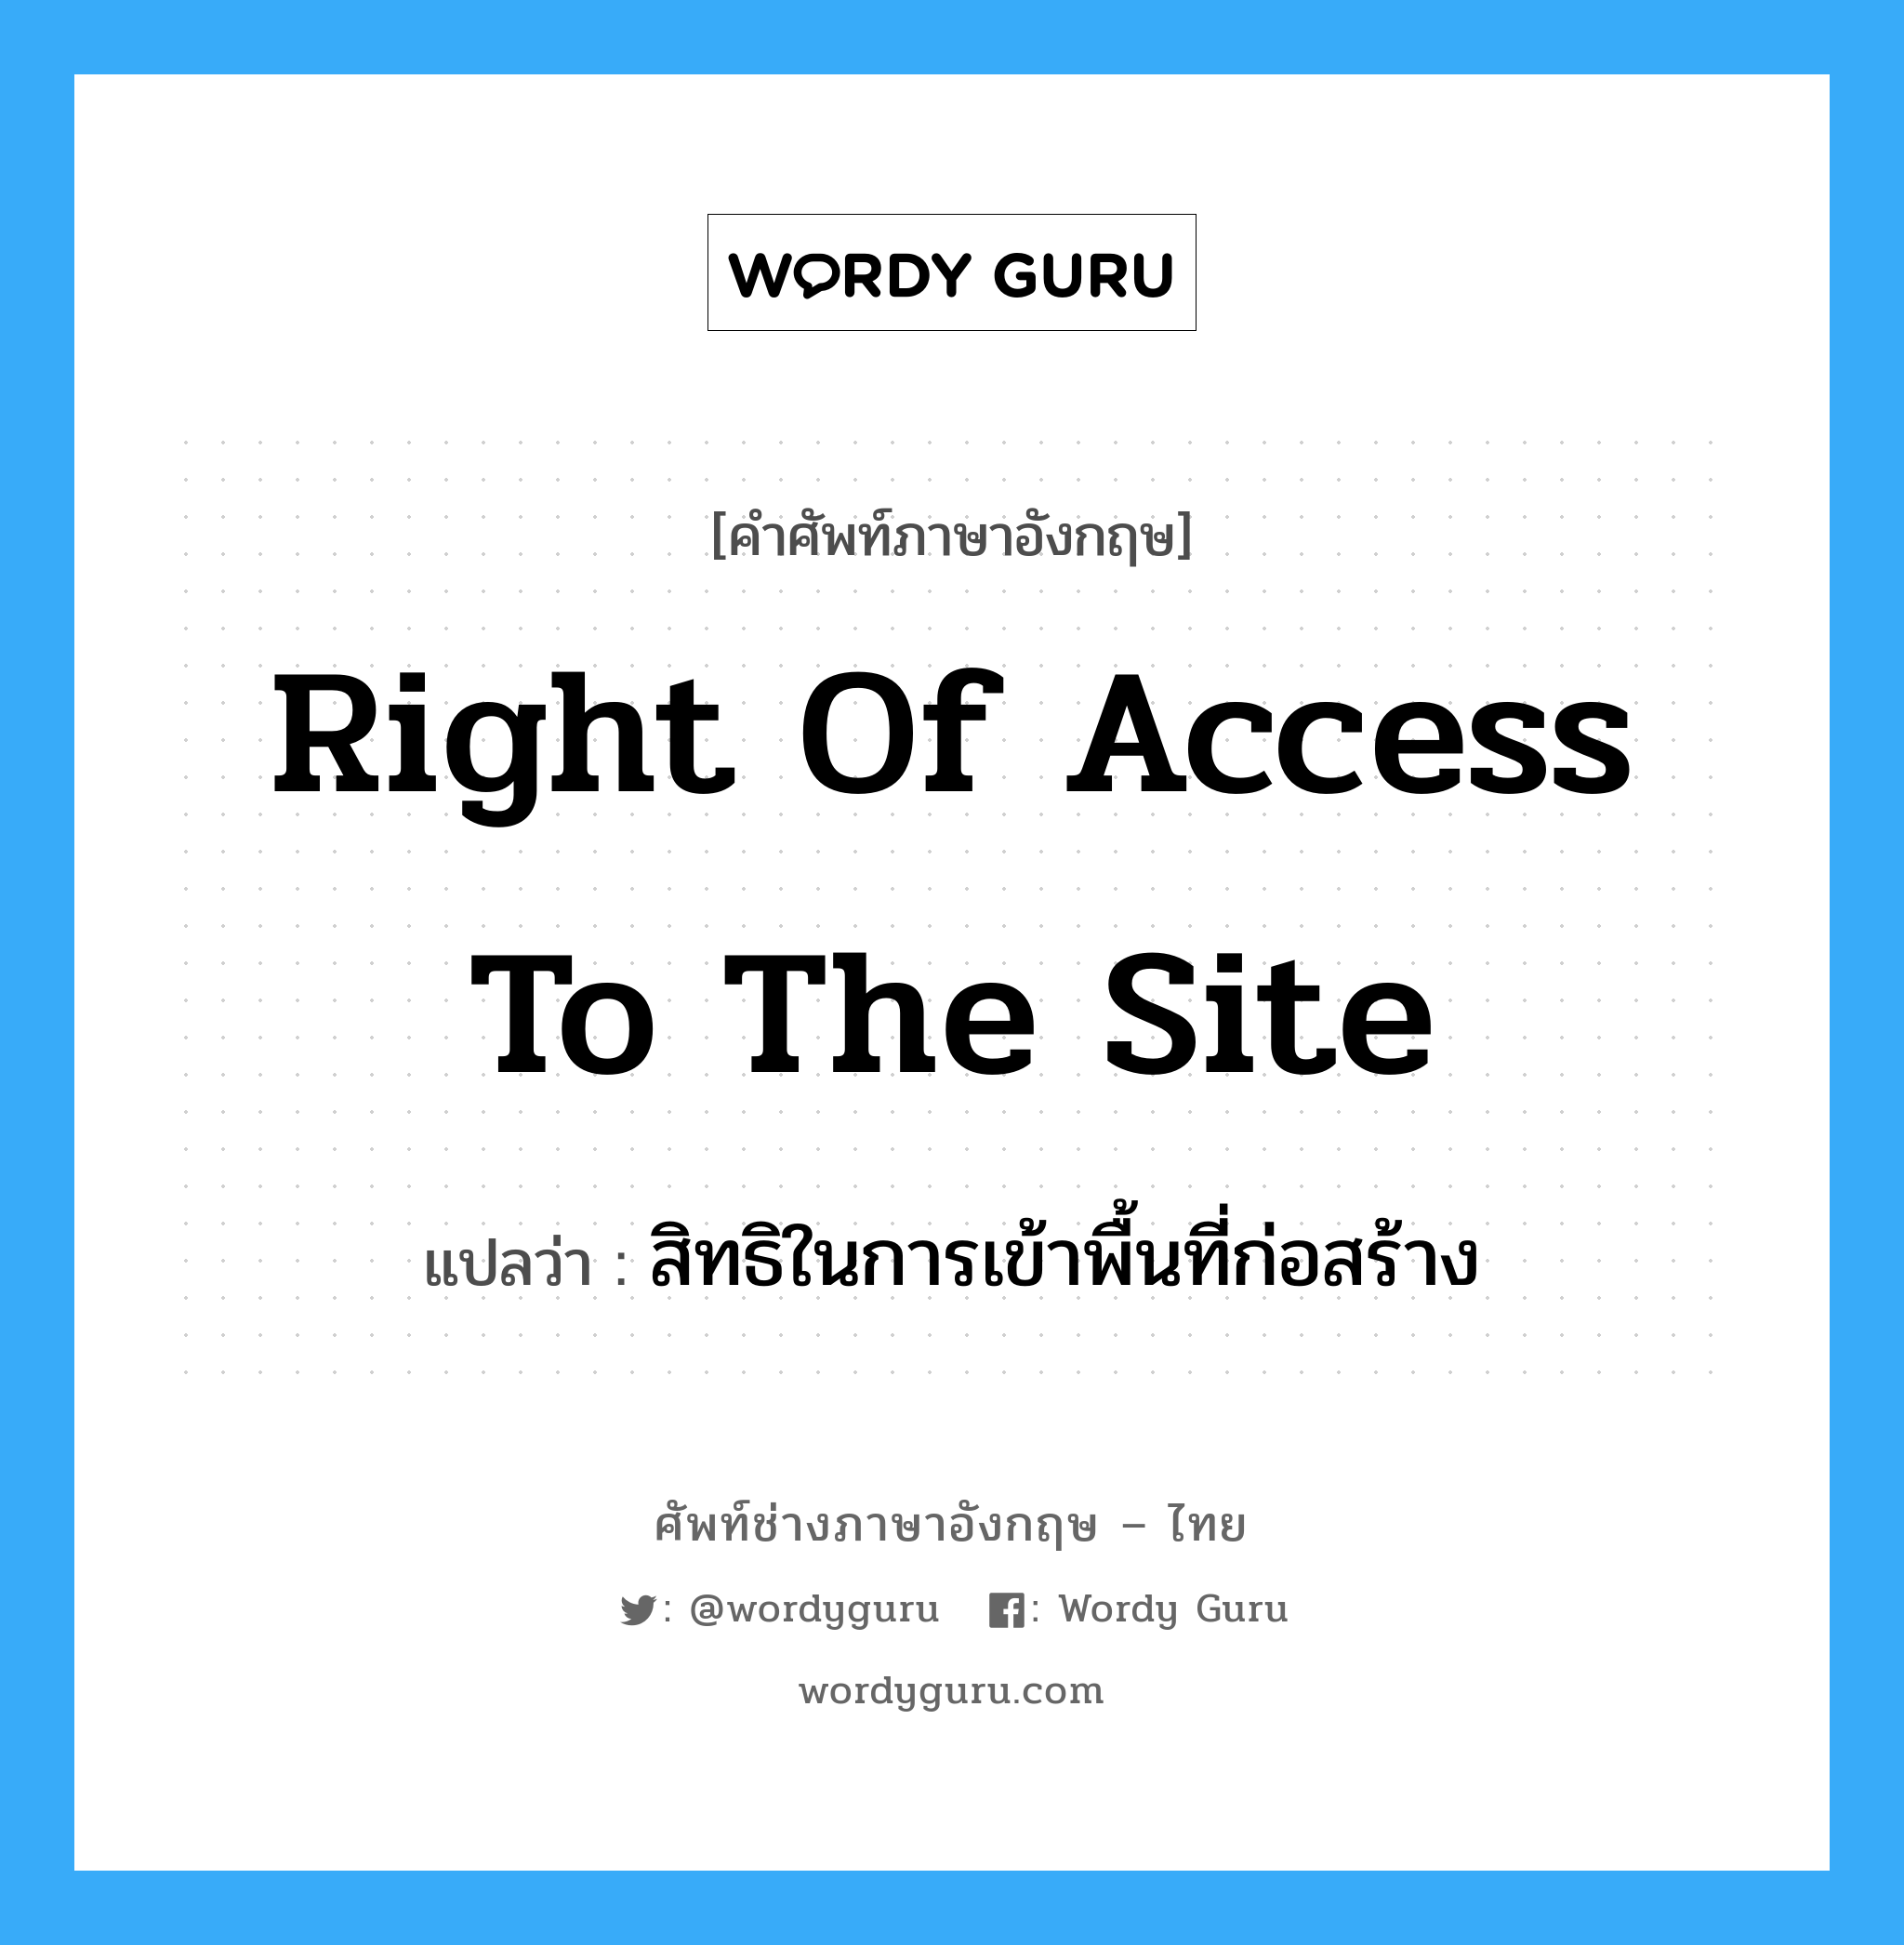 Right of Access to the Site แปลว่า?, คำศัพท์ช่างภาษาอังกฤษ - ไทย Right of Access to the Site คำศัพท์ภาษาอังกฤษ Right of Access to the Site แปลว่า สิทธิในการเข้าพื้นที่ก่อสร้าง